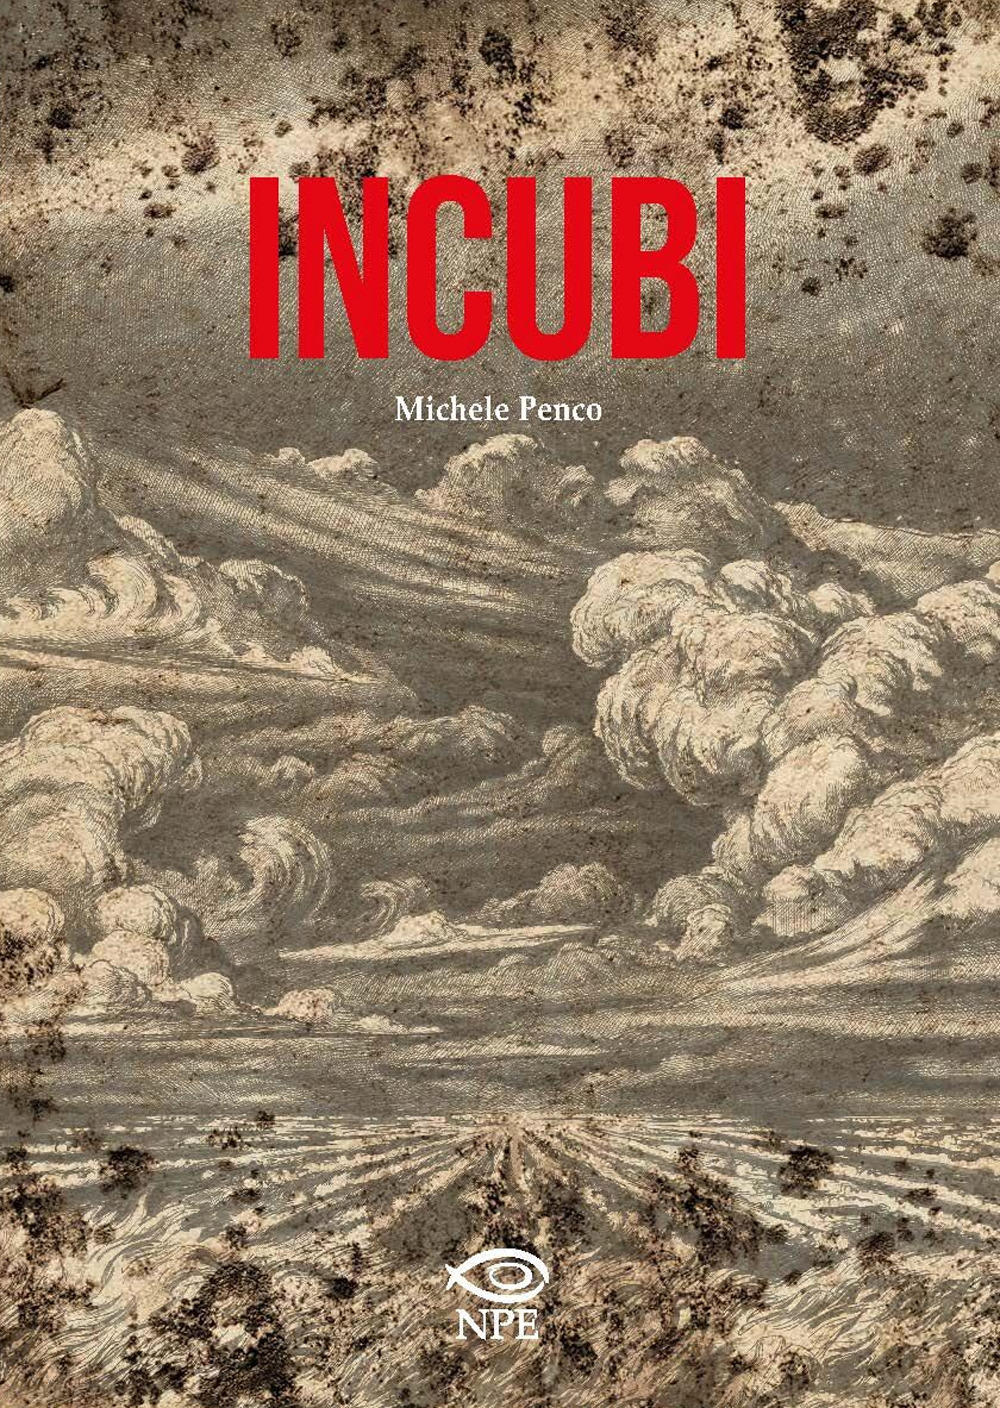 Libri Michele Penco - Incubi NUOVO SIGILLATO, EDIZIONE DEL 18/04/2019 SUBITO DISPONIBILE